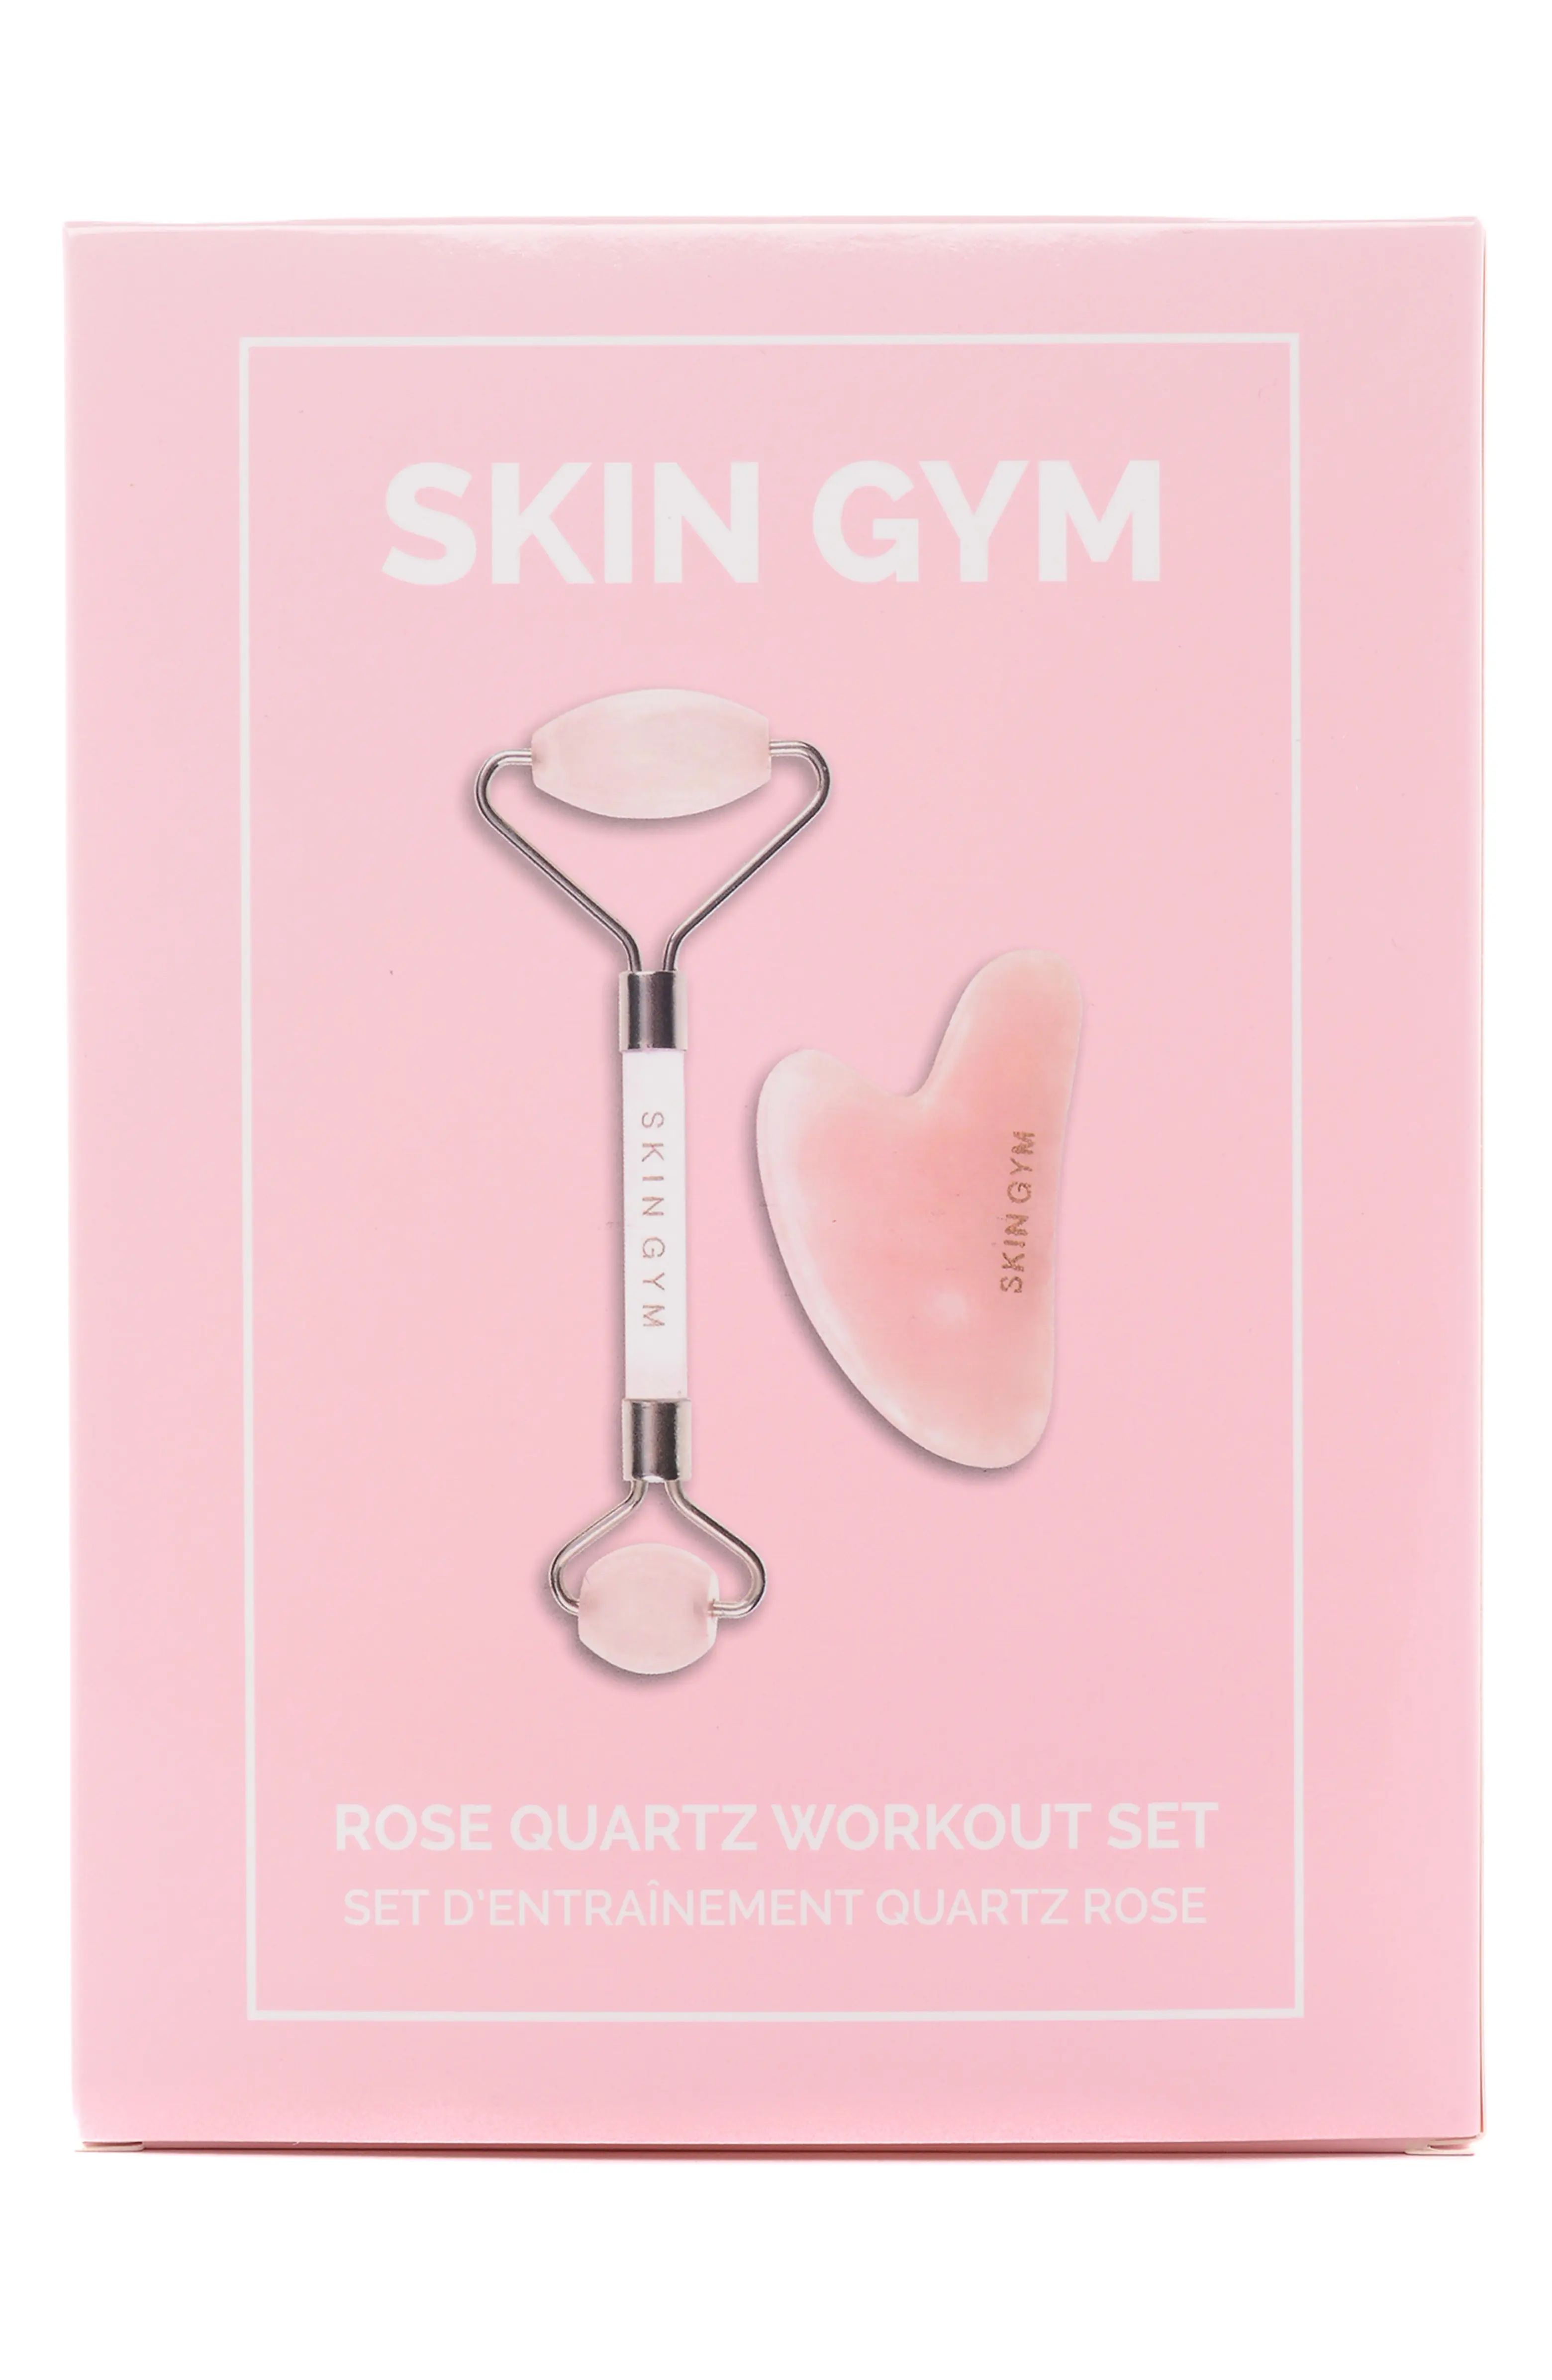 Rose Quartz Workout Set | Nordstrom